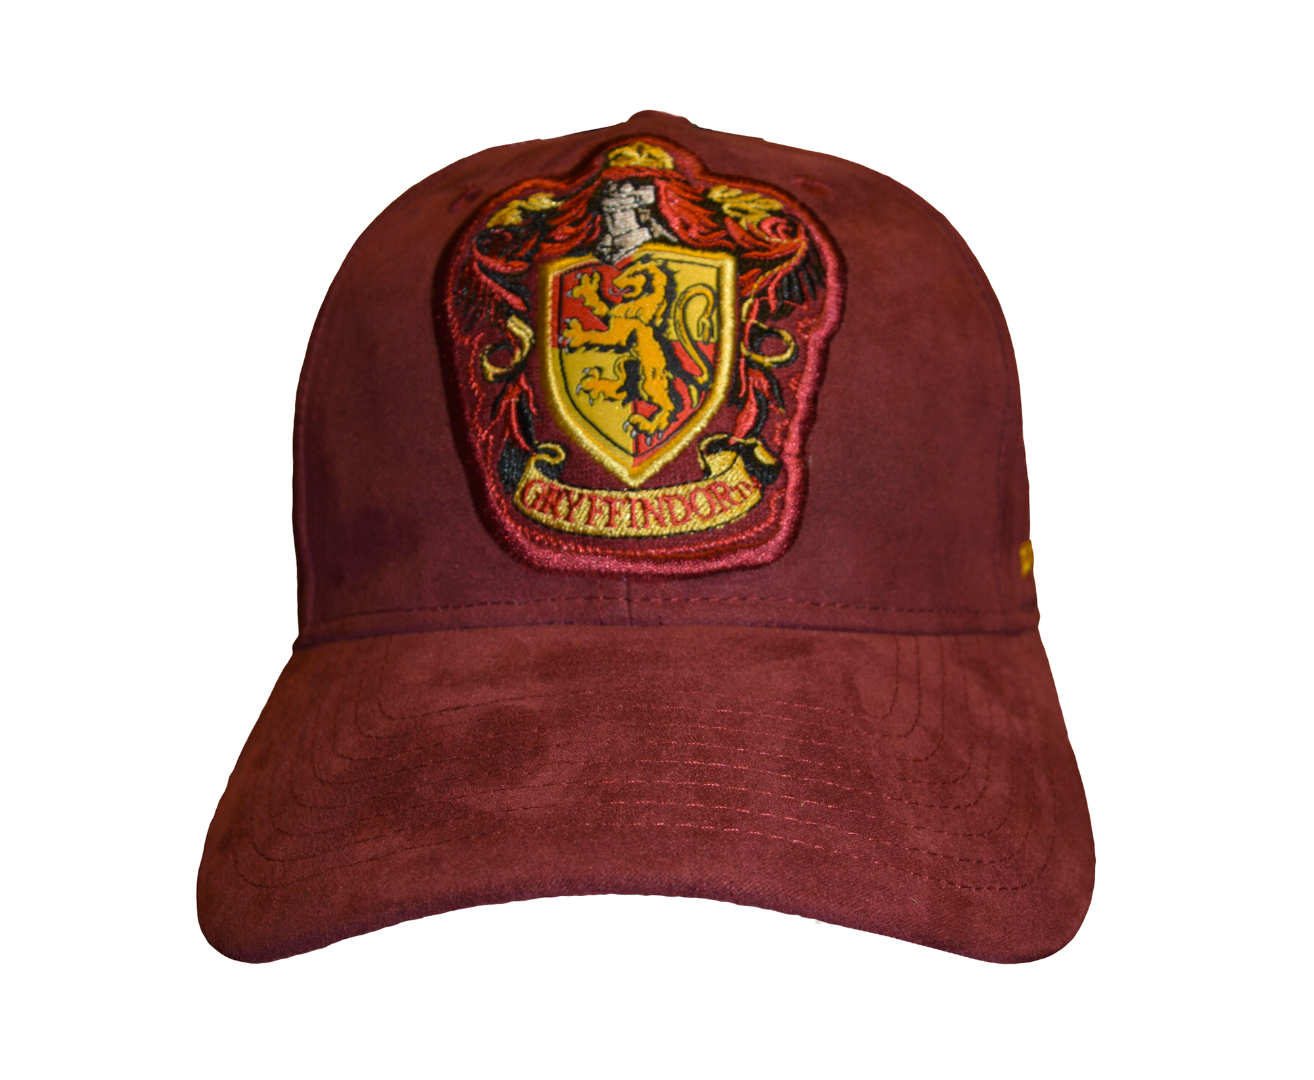 Licensed Harry Potter Gryffindor baseball Cap - British Heritage Brands